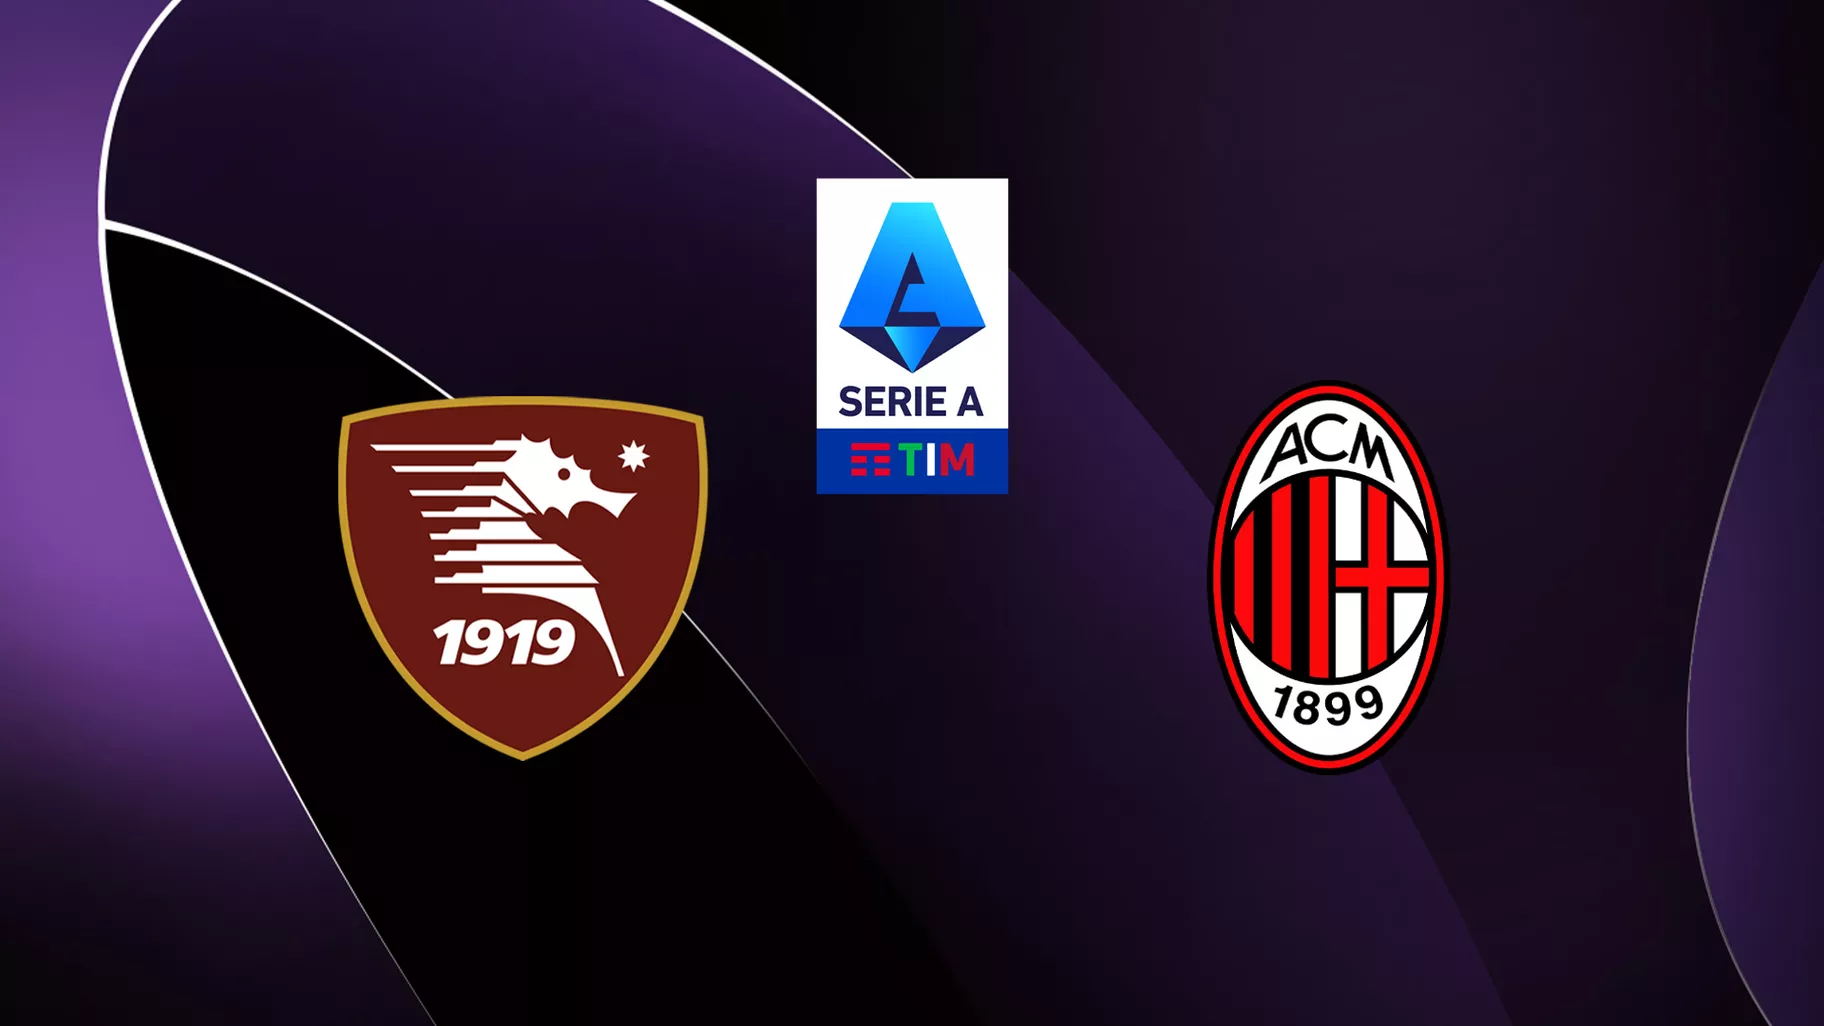 Salernitana / AC Milan (TV/Streaming) Sur quelle chaîne et à quelle heure regarder le match de Serie A ?